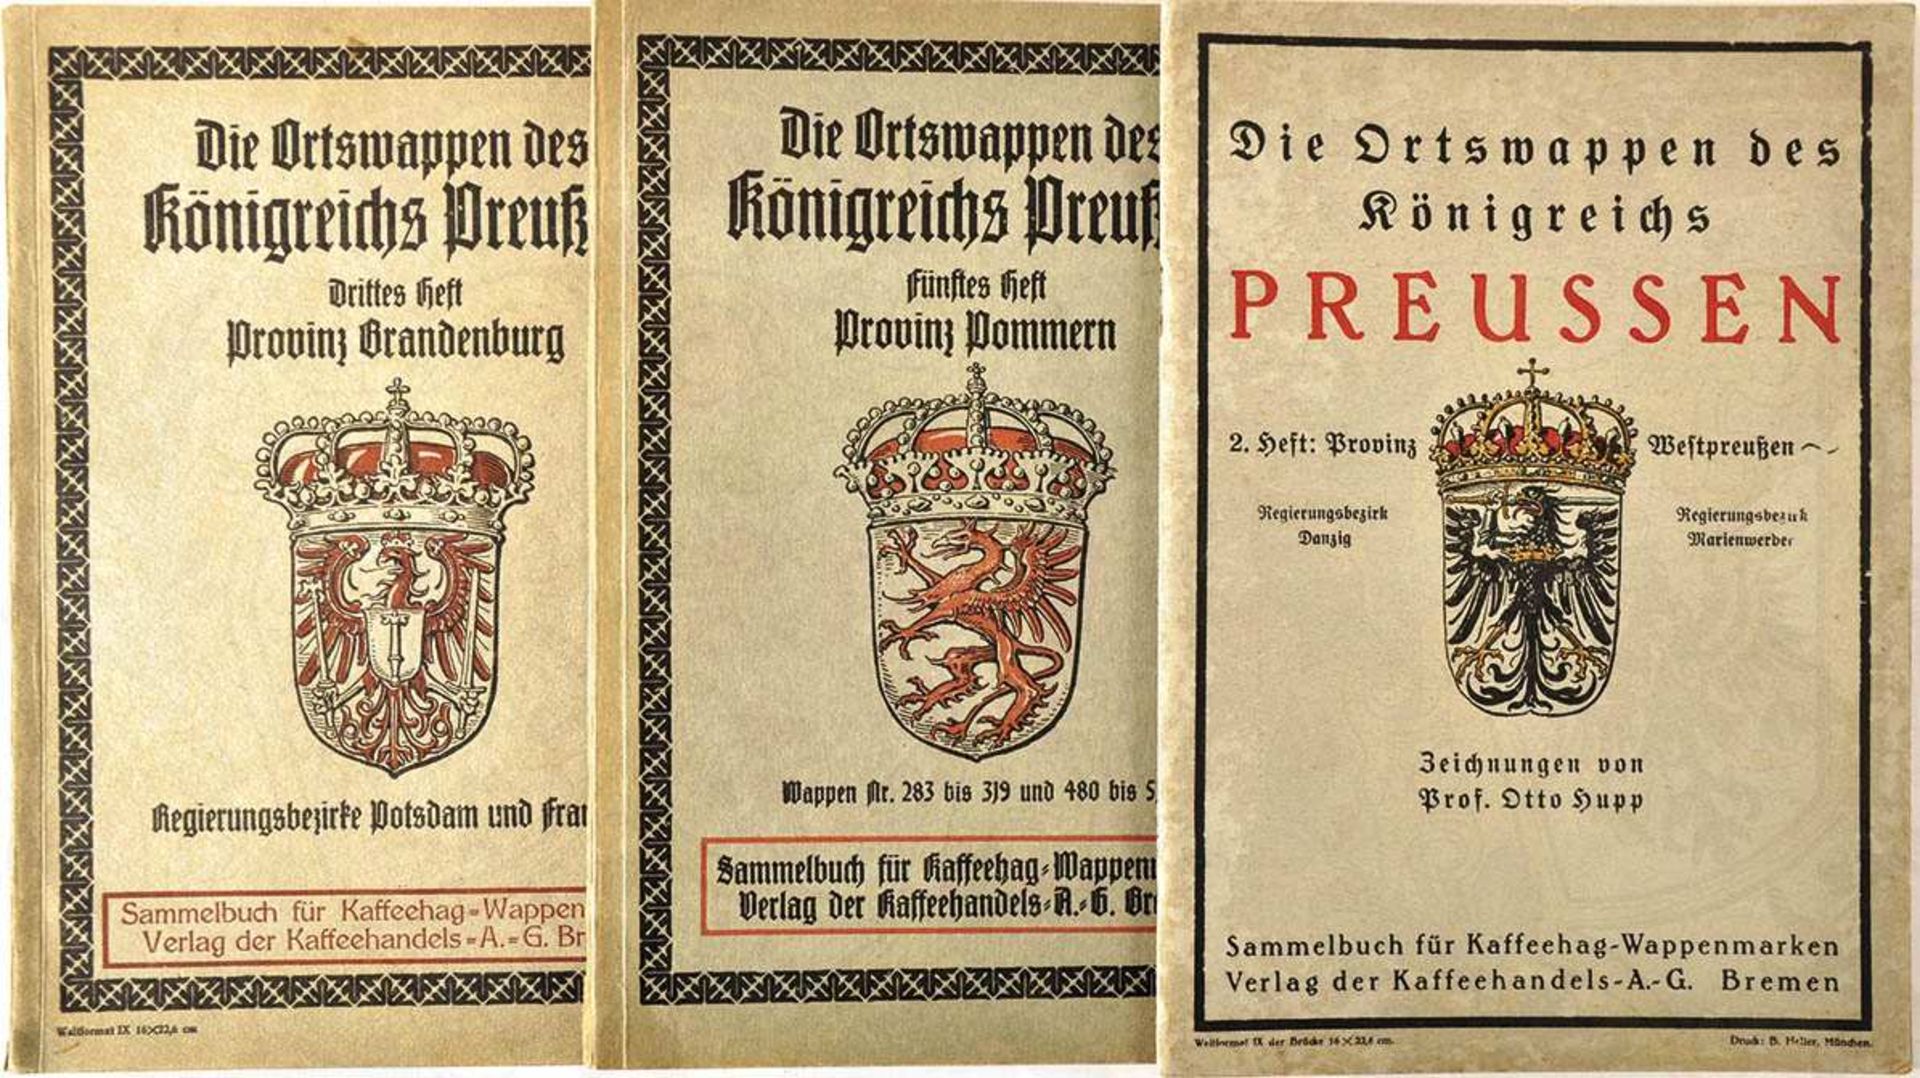 DIE ORTSWAPPEN DES KÖNIGREICHS PREUSSEN, Hefte 2, 3 u. 5 (Westpreußen/ Brandenburg/ Pommern), Bremen